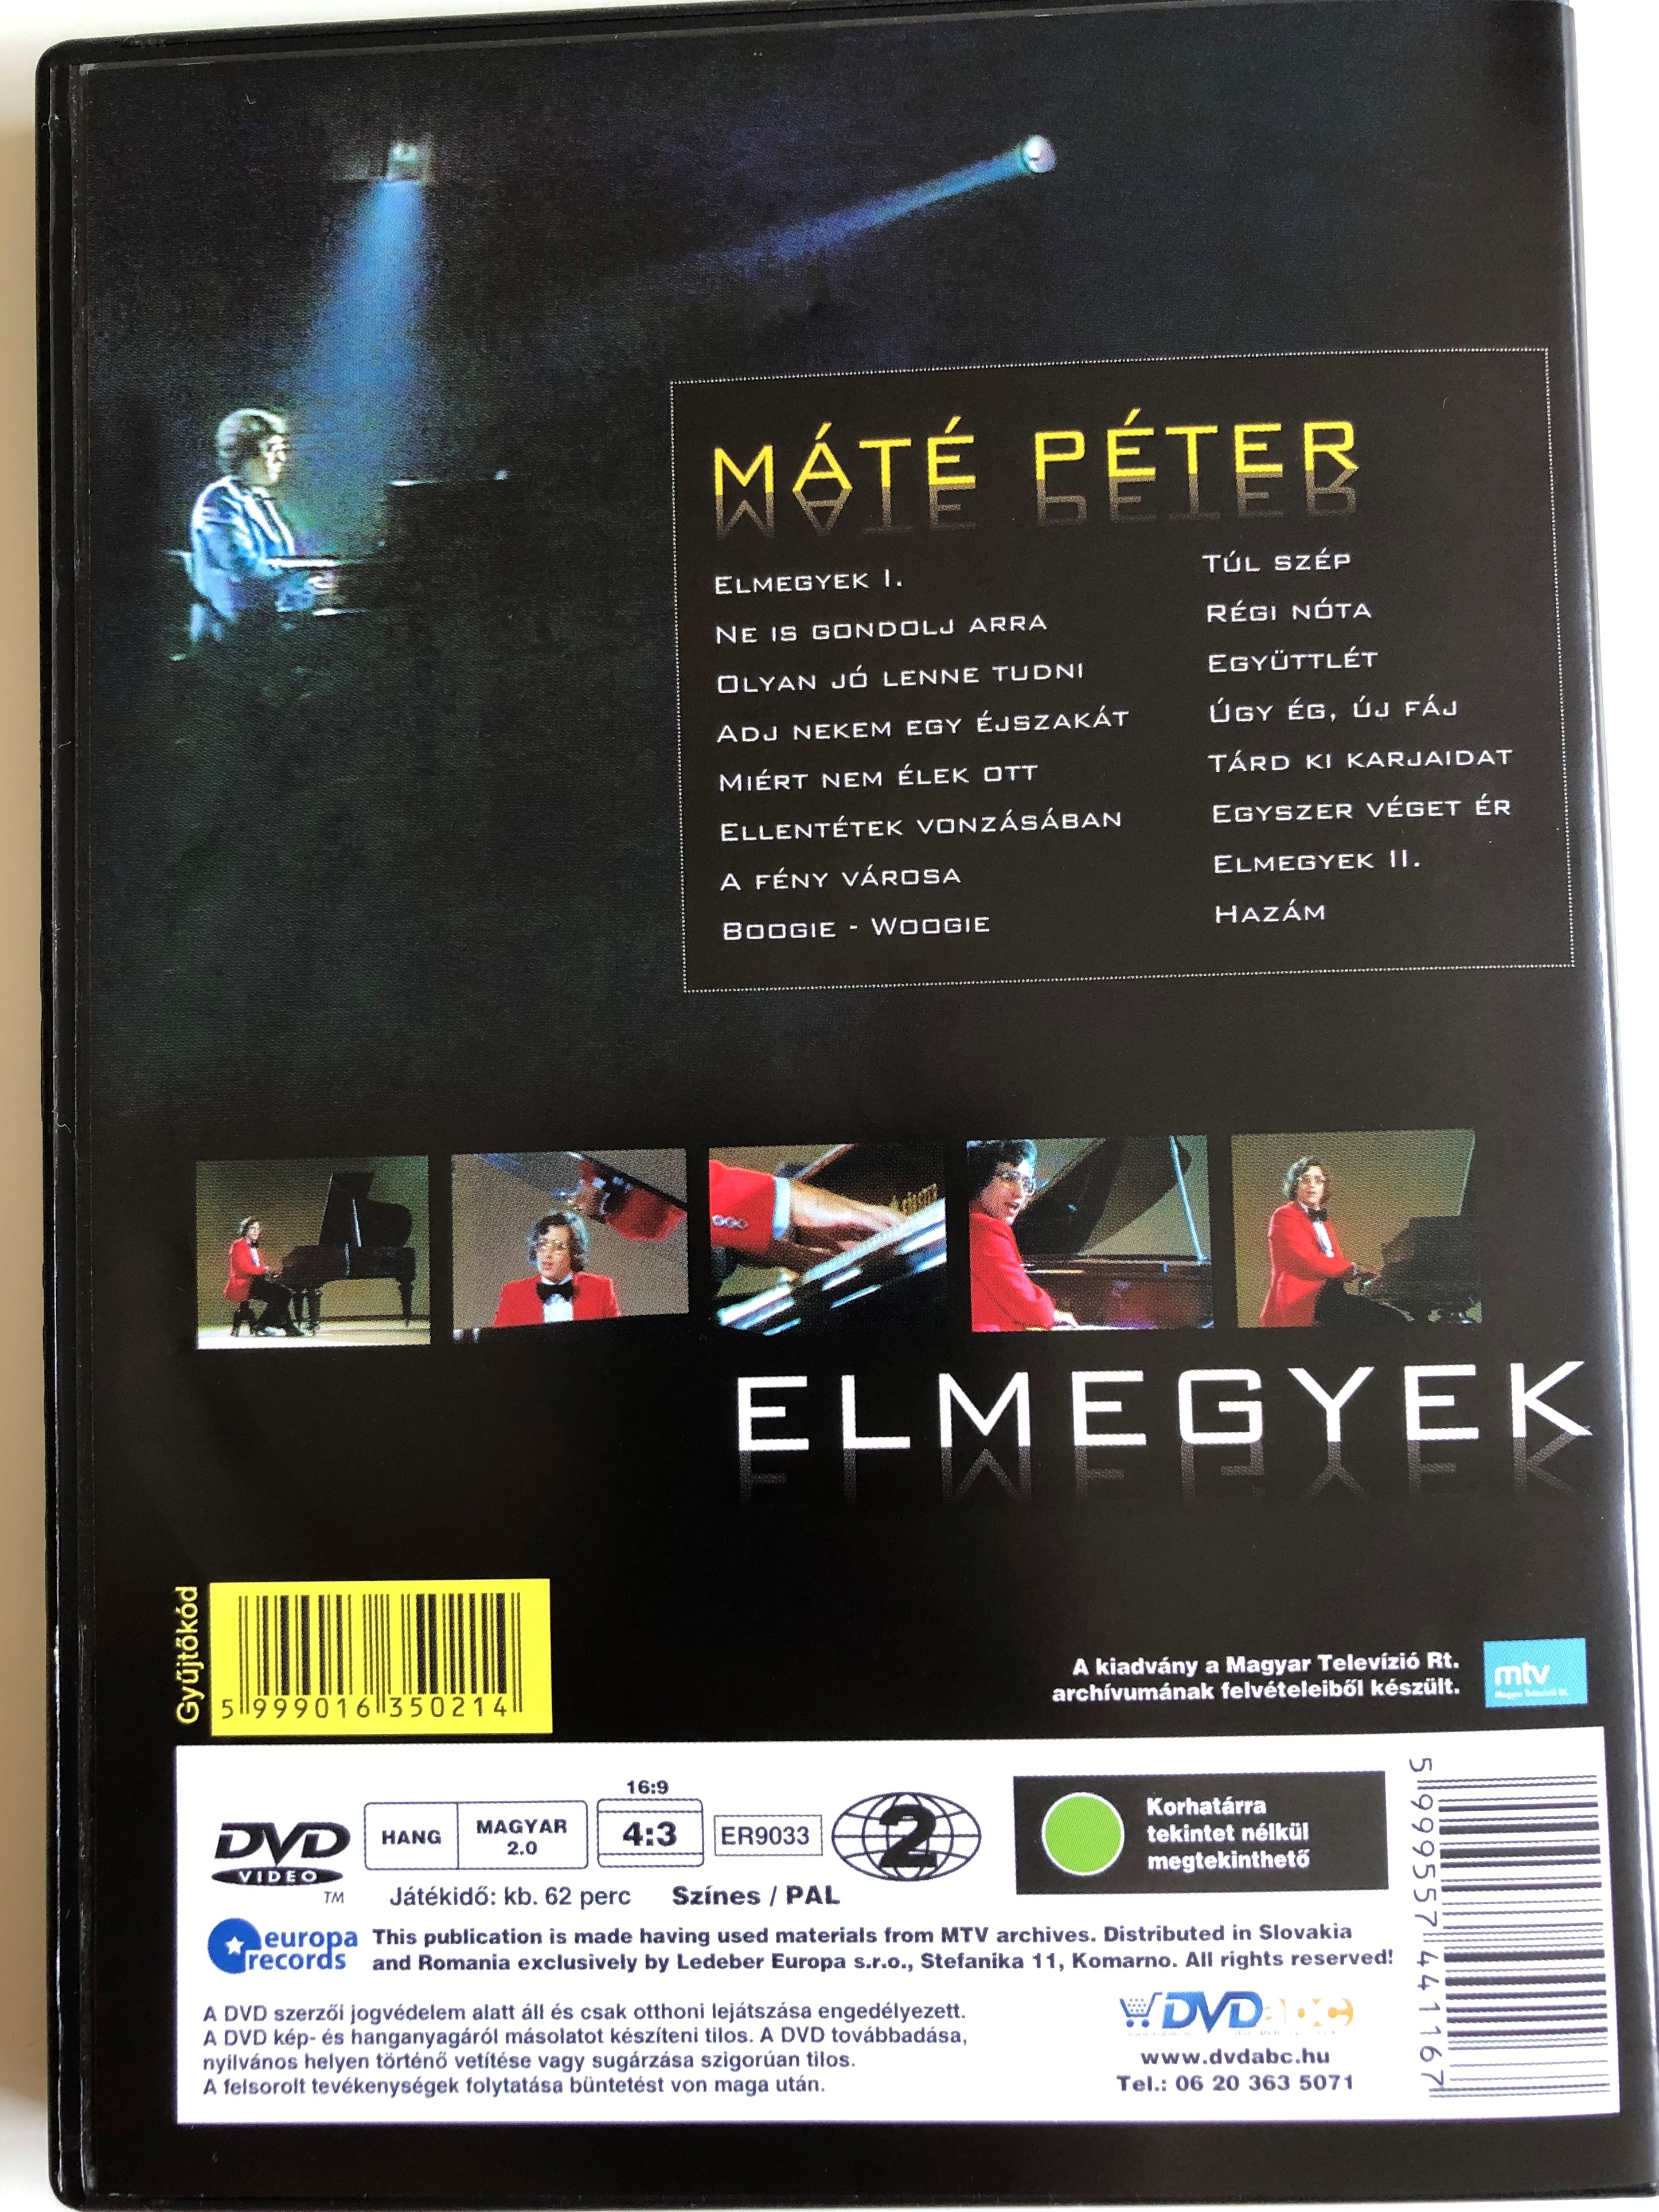 m-t-p-ter-elmegyek-dvd-2009-eur-pa-records-er9033-great-hits-from-the-famous-singer-2-.jpg